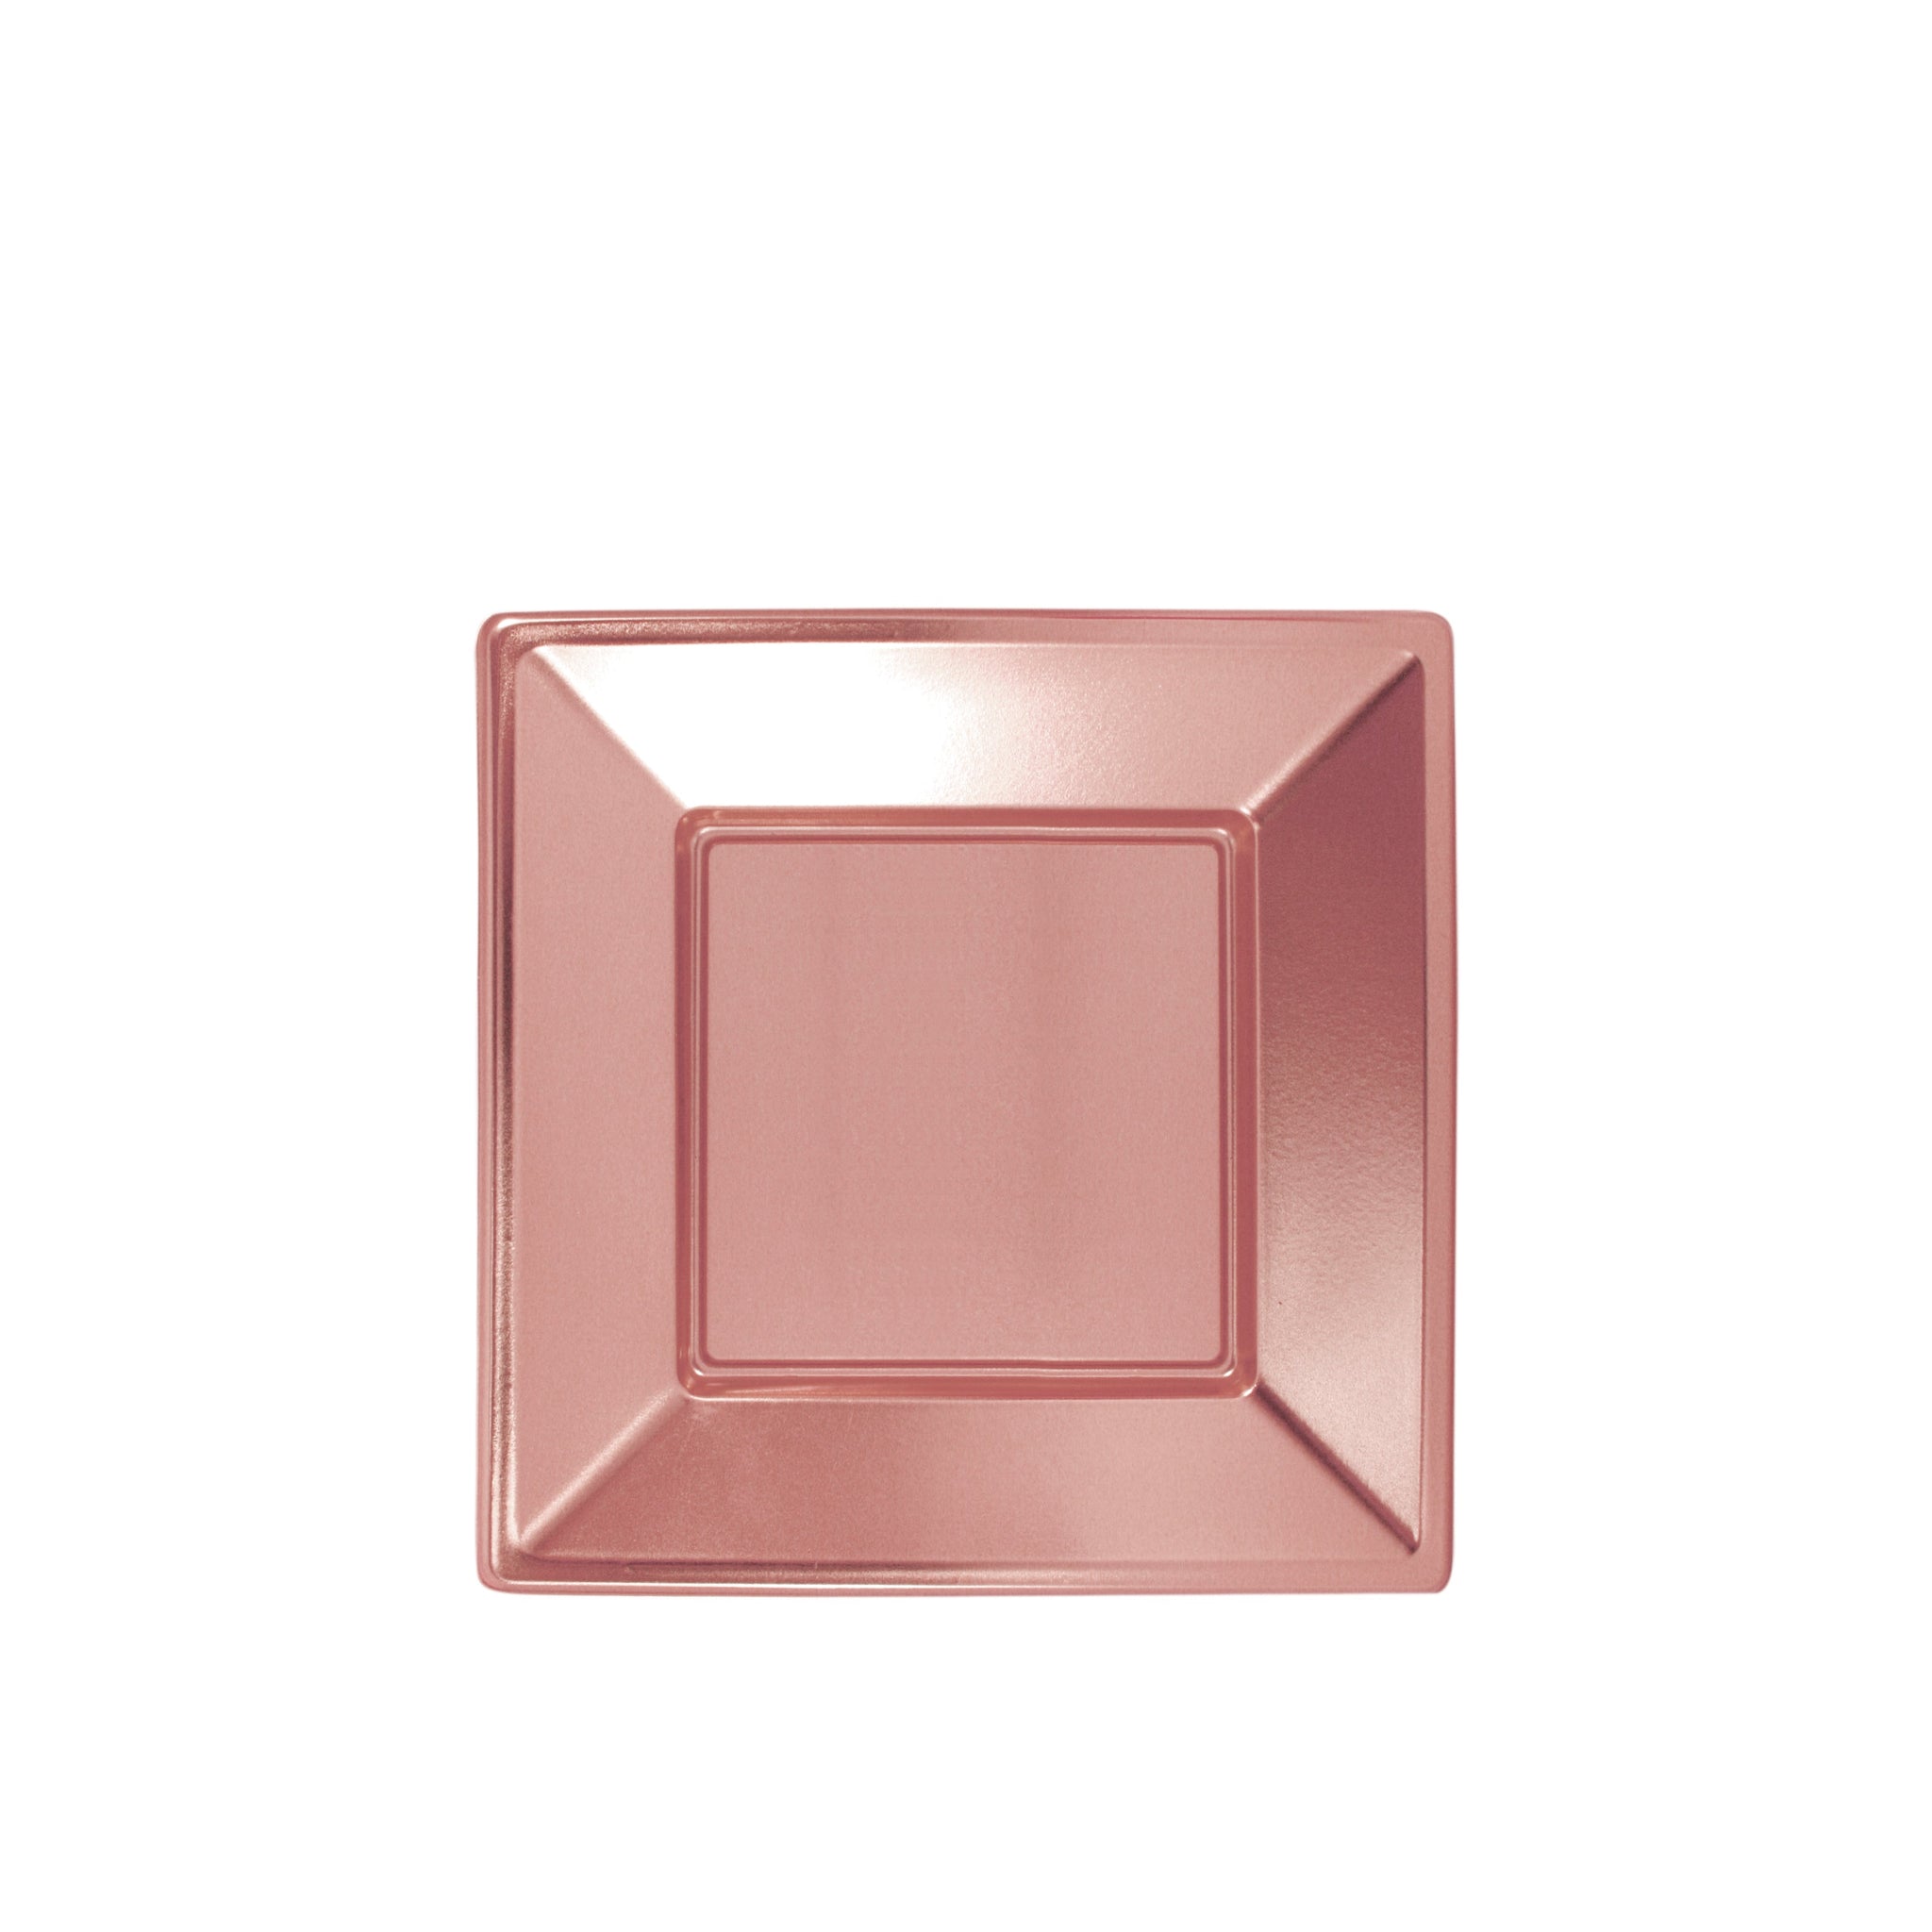 Plato Plástico Llano Cuadrado Metalizado 23 x 23 cm Oro Rosa